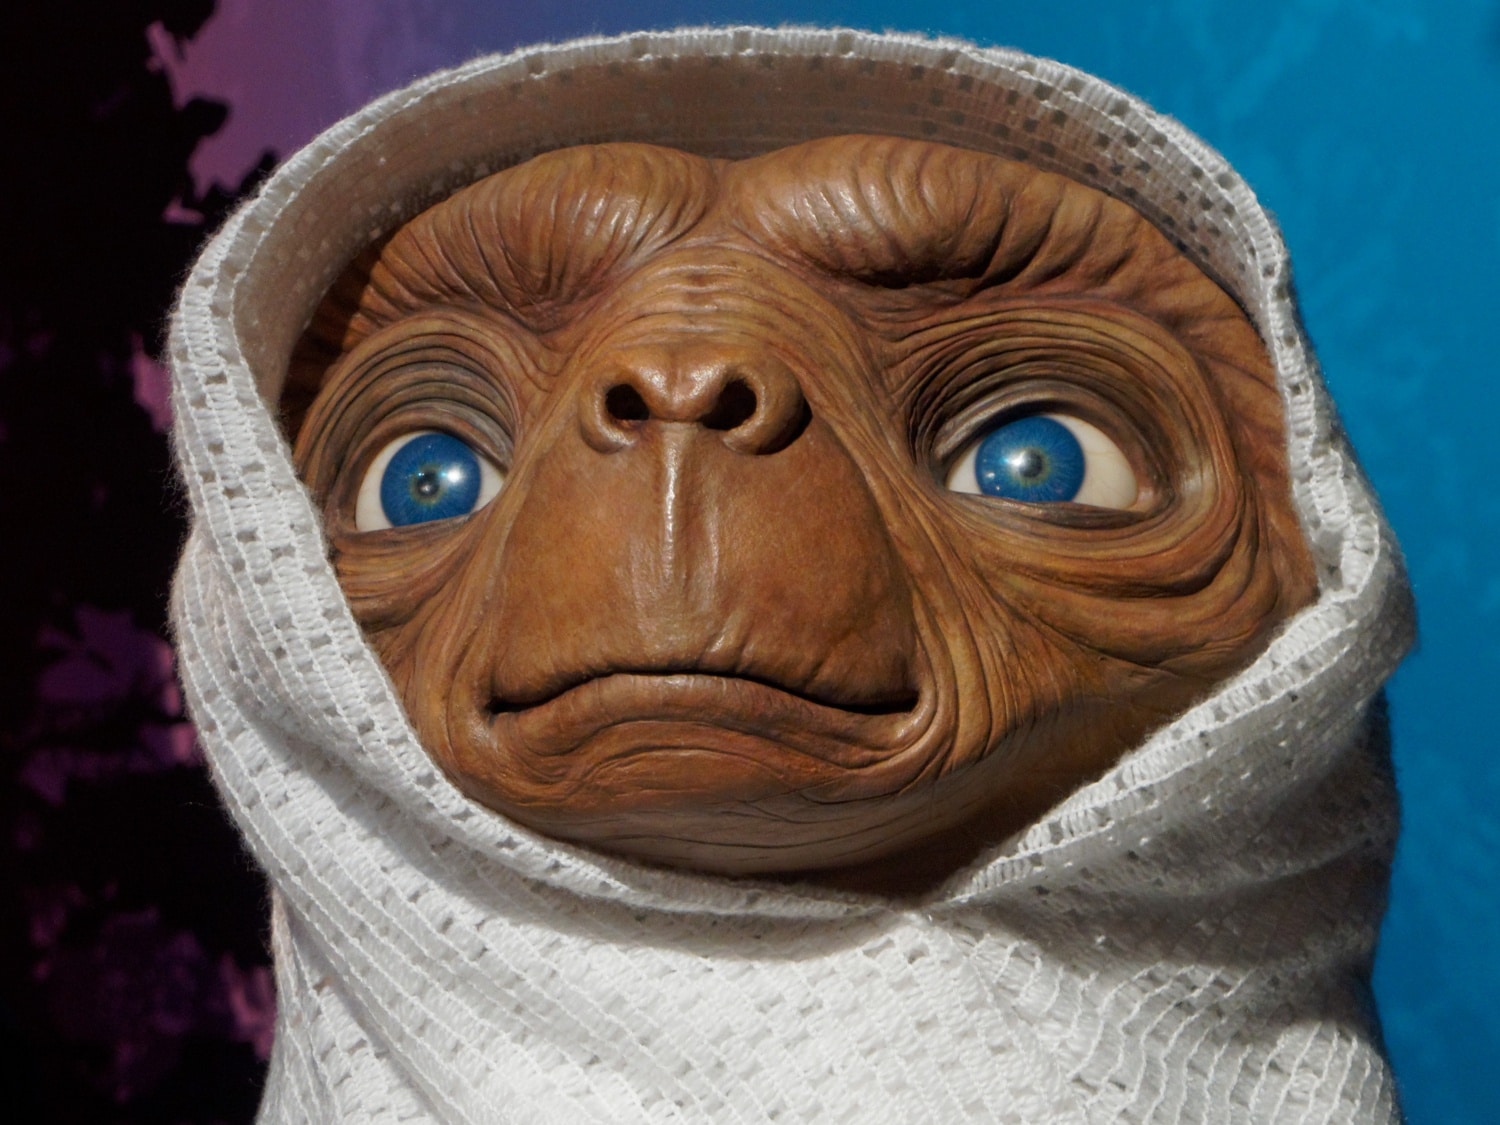 Hová tűnt a jóságos E.T.? A gonosz ufók világa